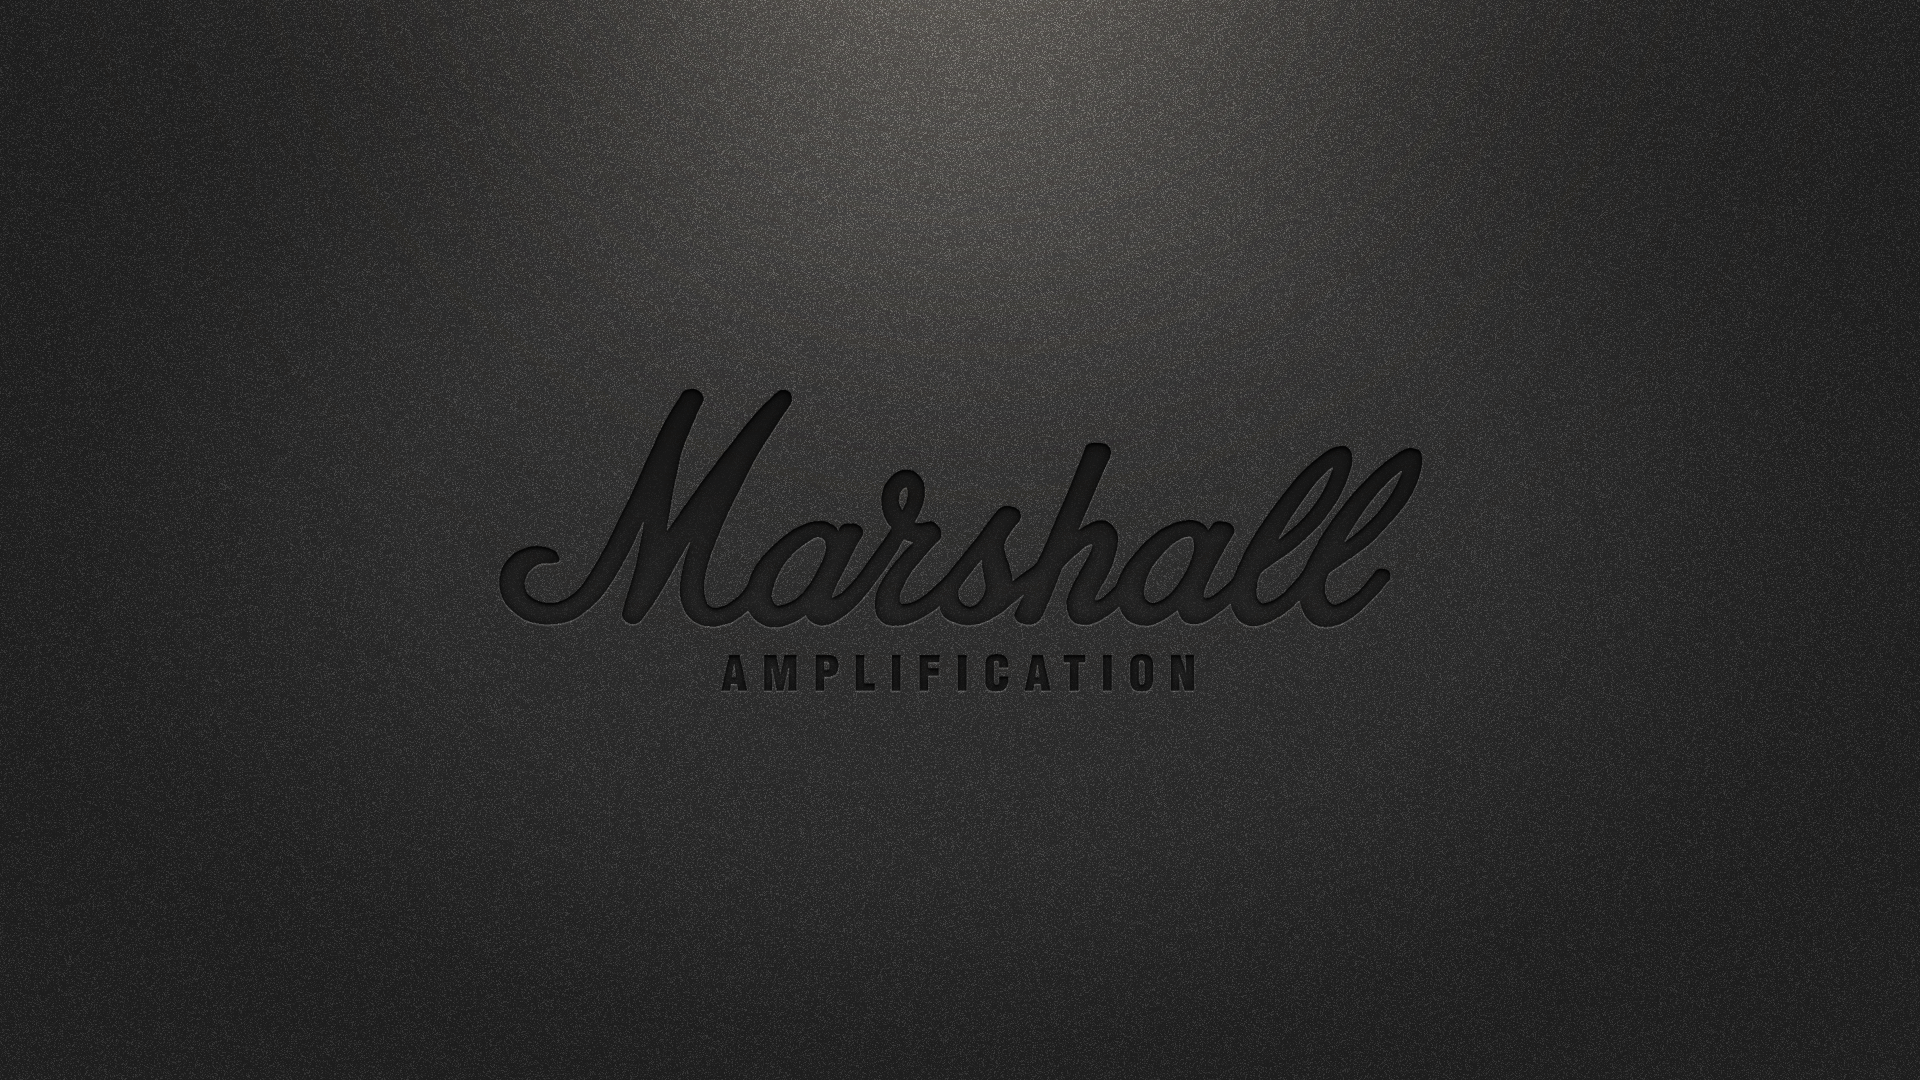 Marshall Amplification Black Wallpaper by 8168055 on DeviantArt